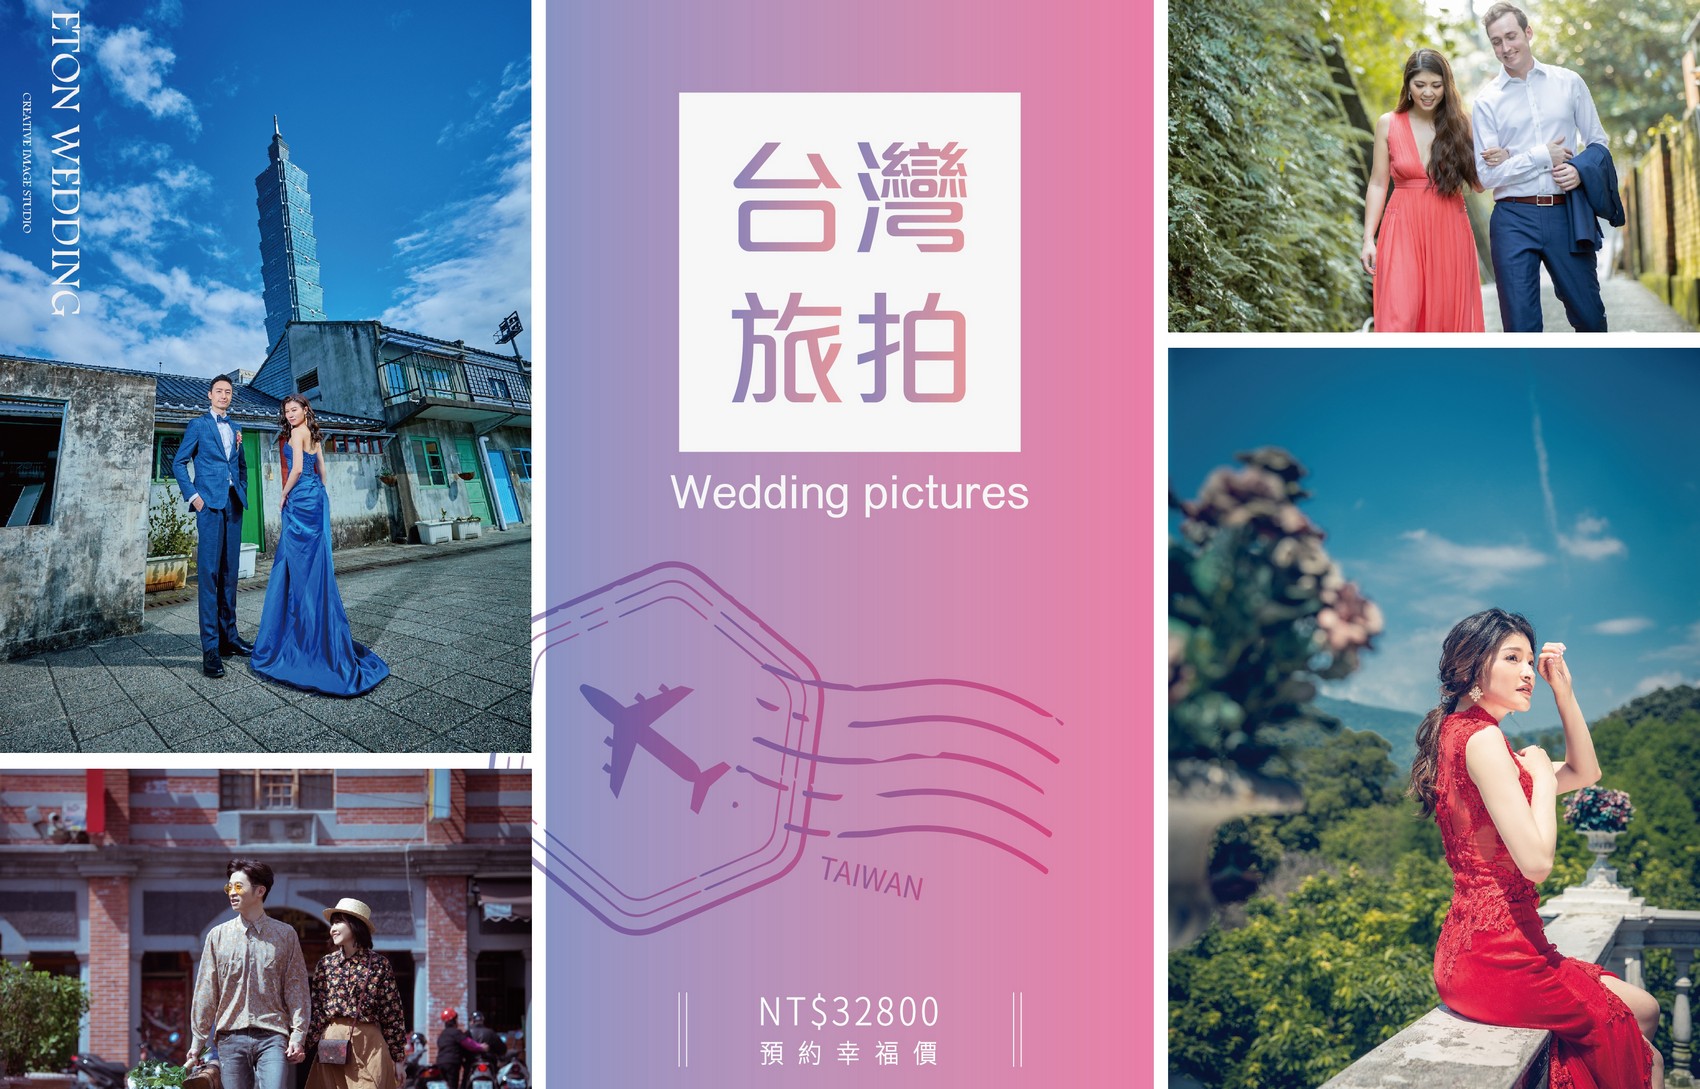 台灣 婚紗工作室,台灣 婚紗攝影價格,苗栗拍婚紗,苗栗 婚紗攝影,苗栗 婚紗工作室